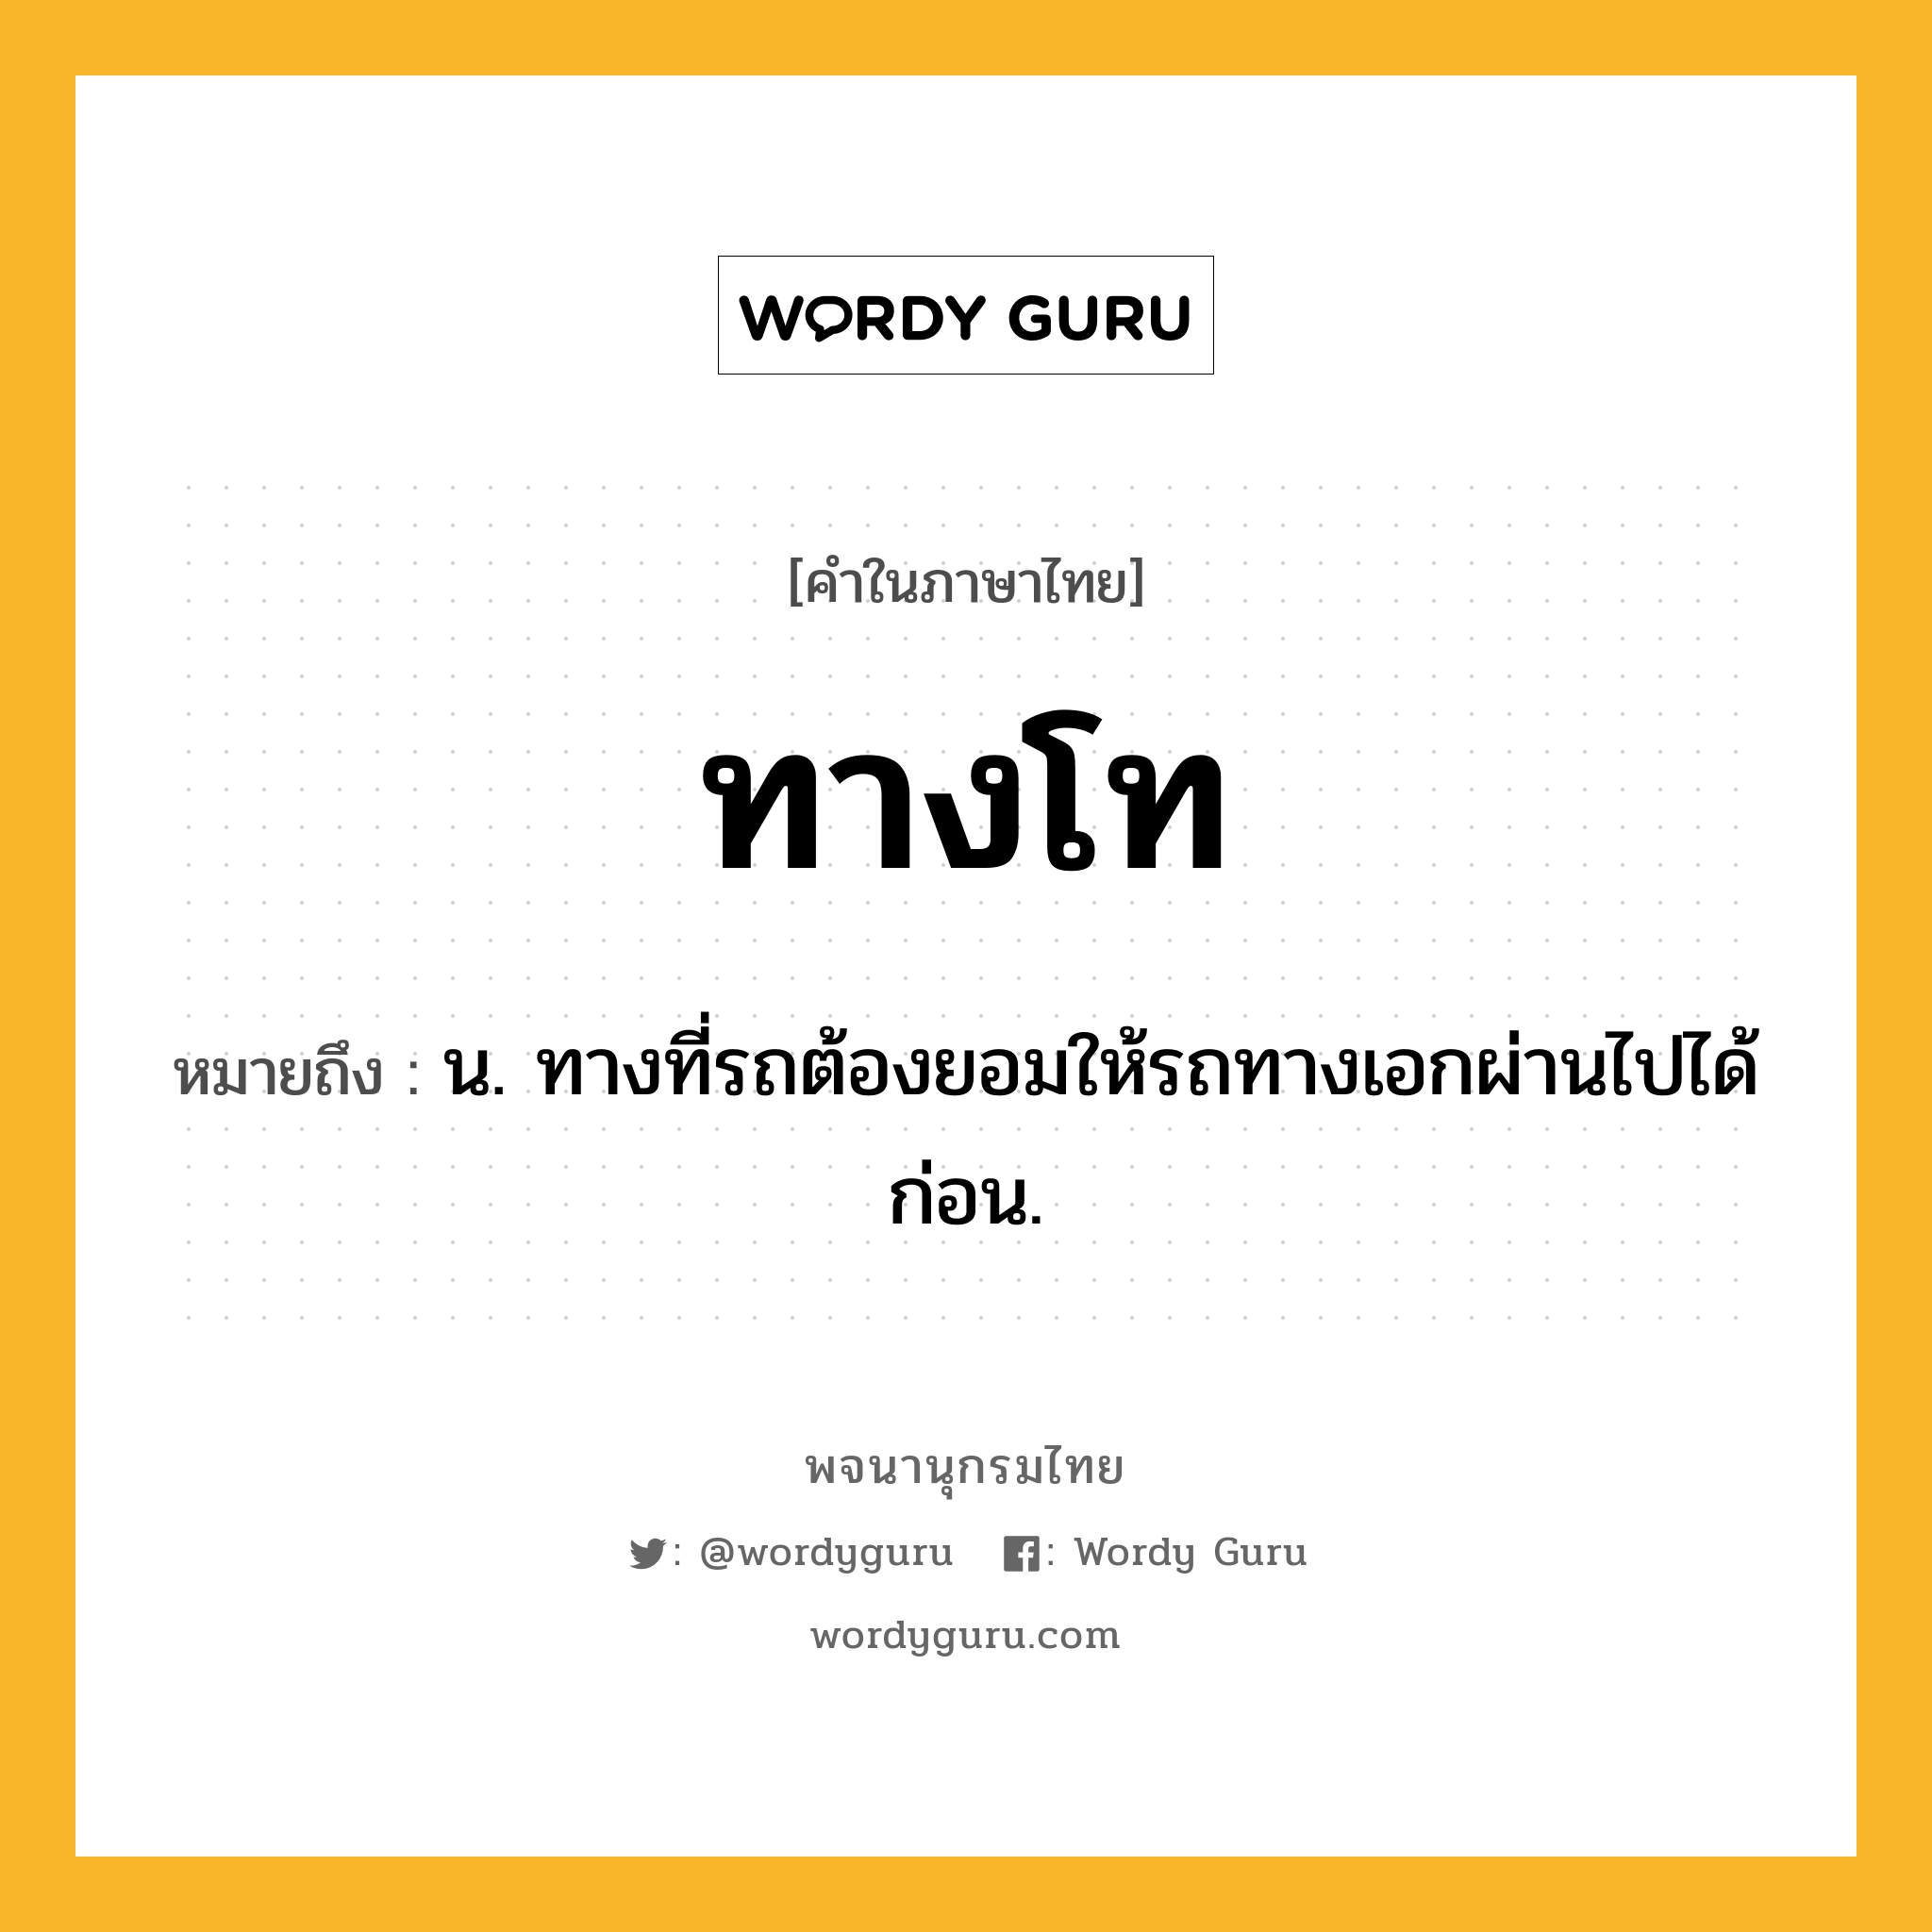 ทางโท ความหมาย หมายถึงอะไร?, คำในภาษาไทย ทางโท หมายถึง น. ทางที่รถต้องยอมให้รถทางเอกผ่านไปได้ก่อน.